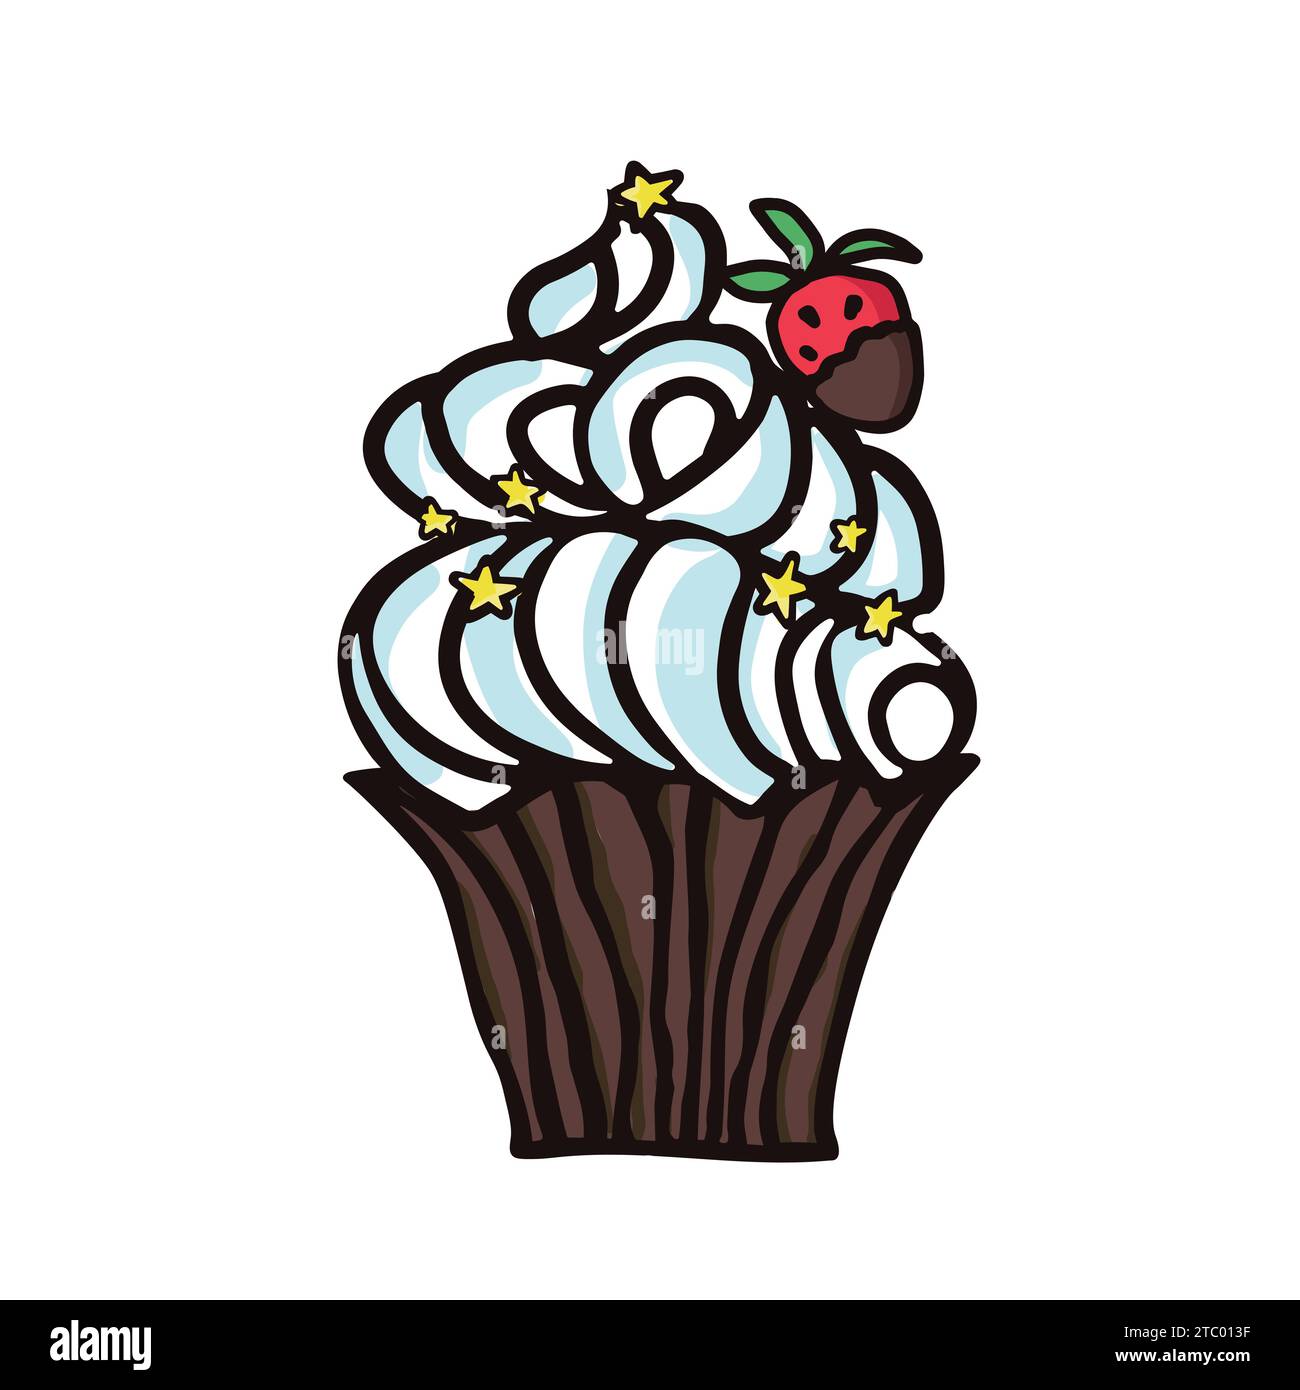 Illustrations esquissées de vecteur de nourriture sucrée de dessert. Macaron, muffin, pudding, gâteau aux fruits. Illustration vectorielle colorée dessinée à la main isolée sur wh Illustration de Vecteur